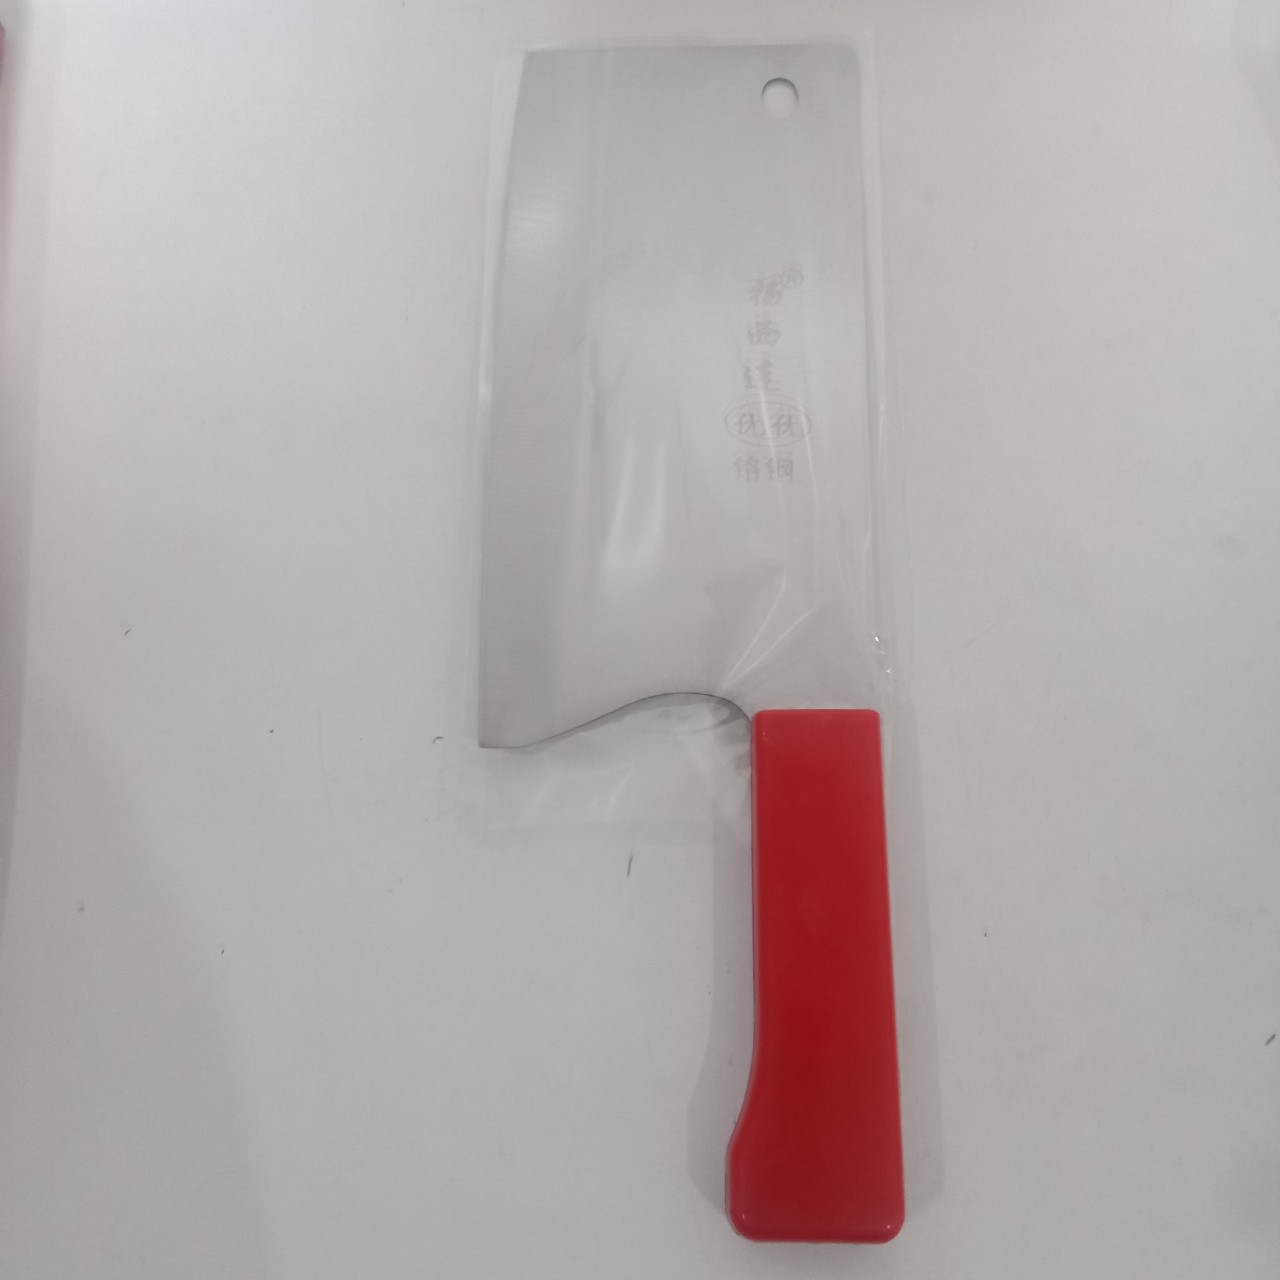 塑料夹柄不锈钢菜刀 锋利切片刀 厨房家用刀具批发